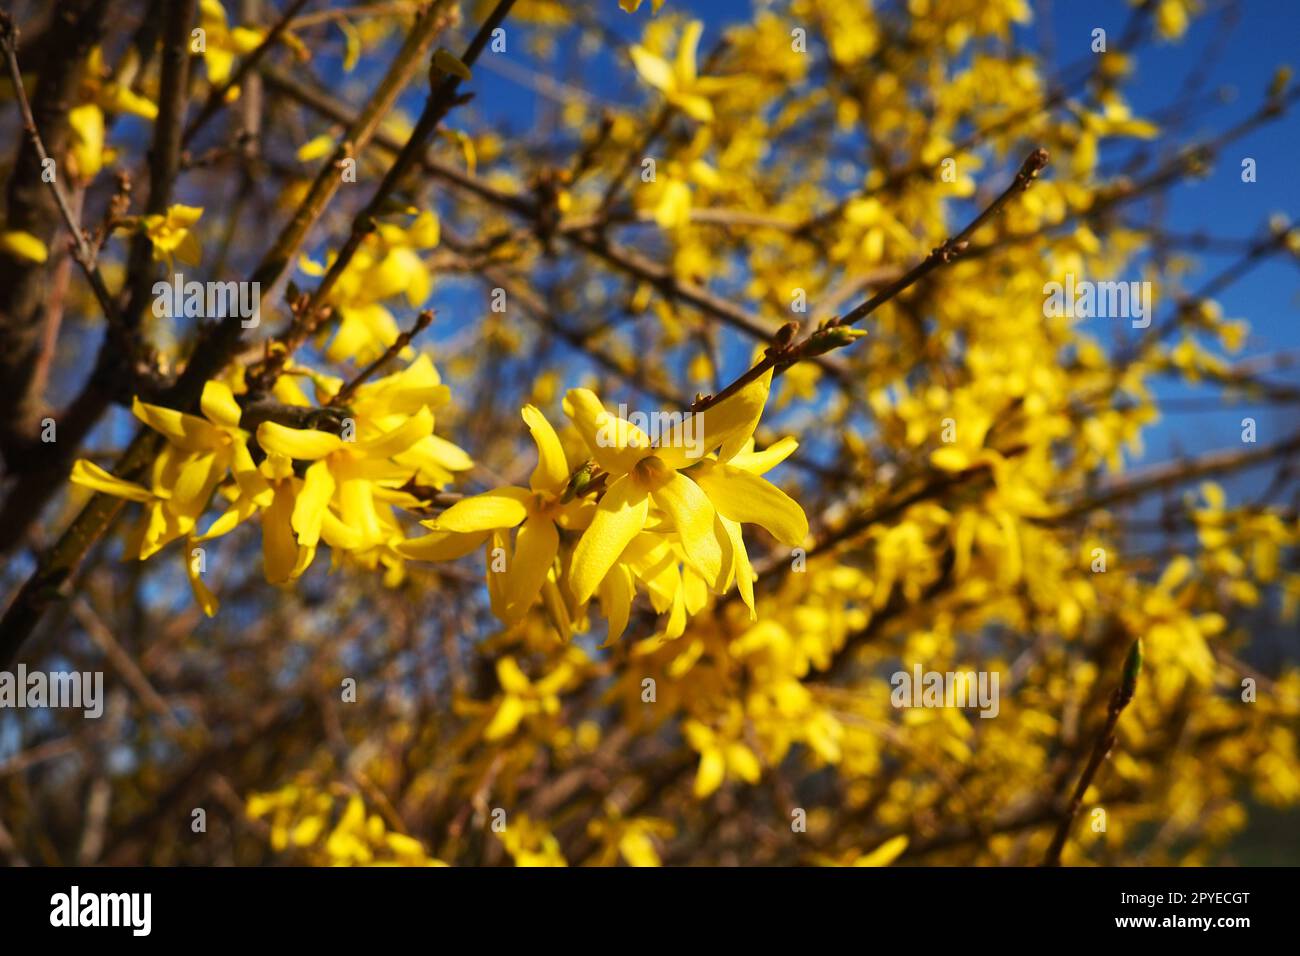 Forsythia est un genre d'arbustes et de petits arbres de la famille des oliviers. Nombreuses fleurs jaunes sur les branches et les pousses. Classe des dicotylédones ordre des Lamiaceae famille des olives Genus Forsythia Banque D'Images